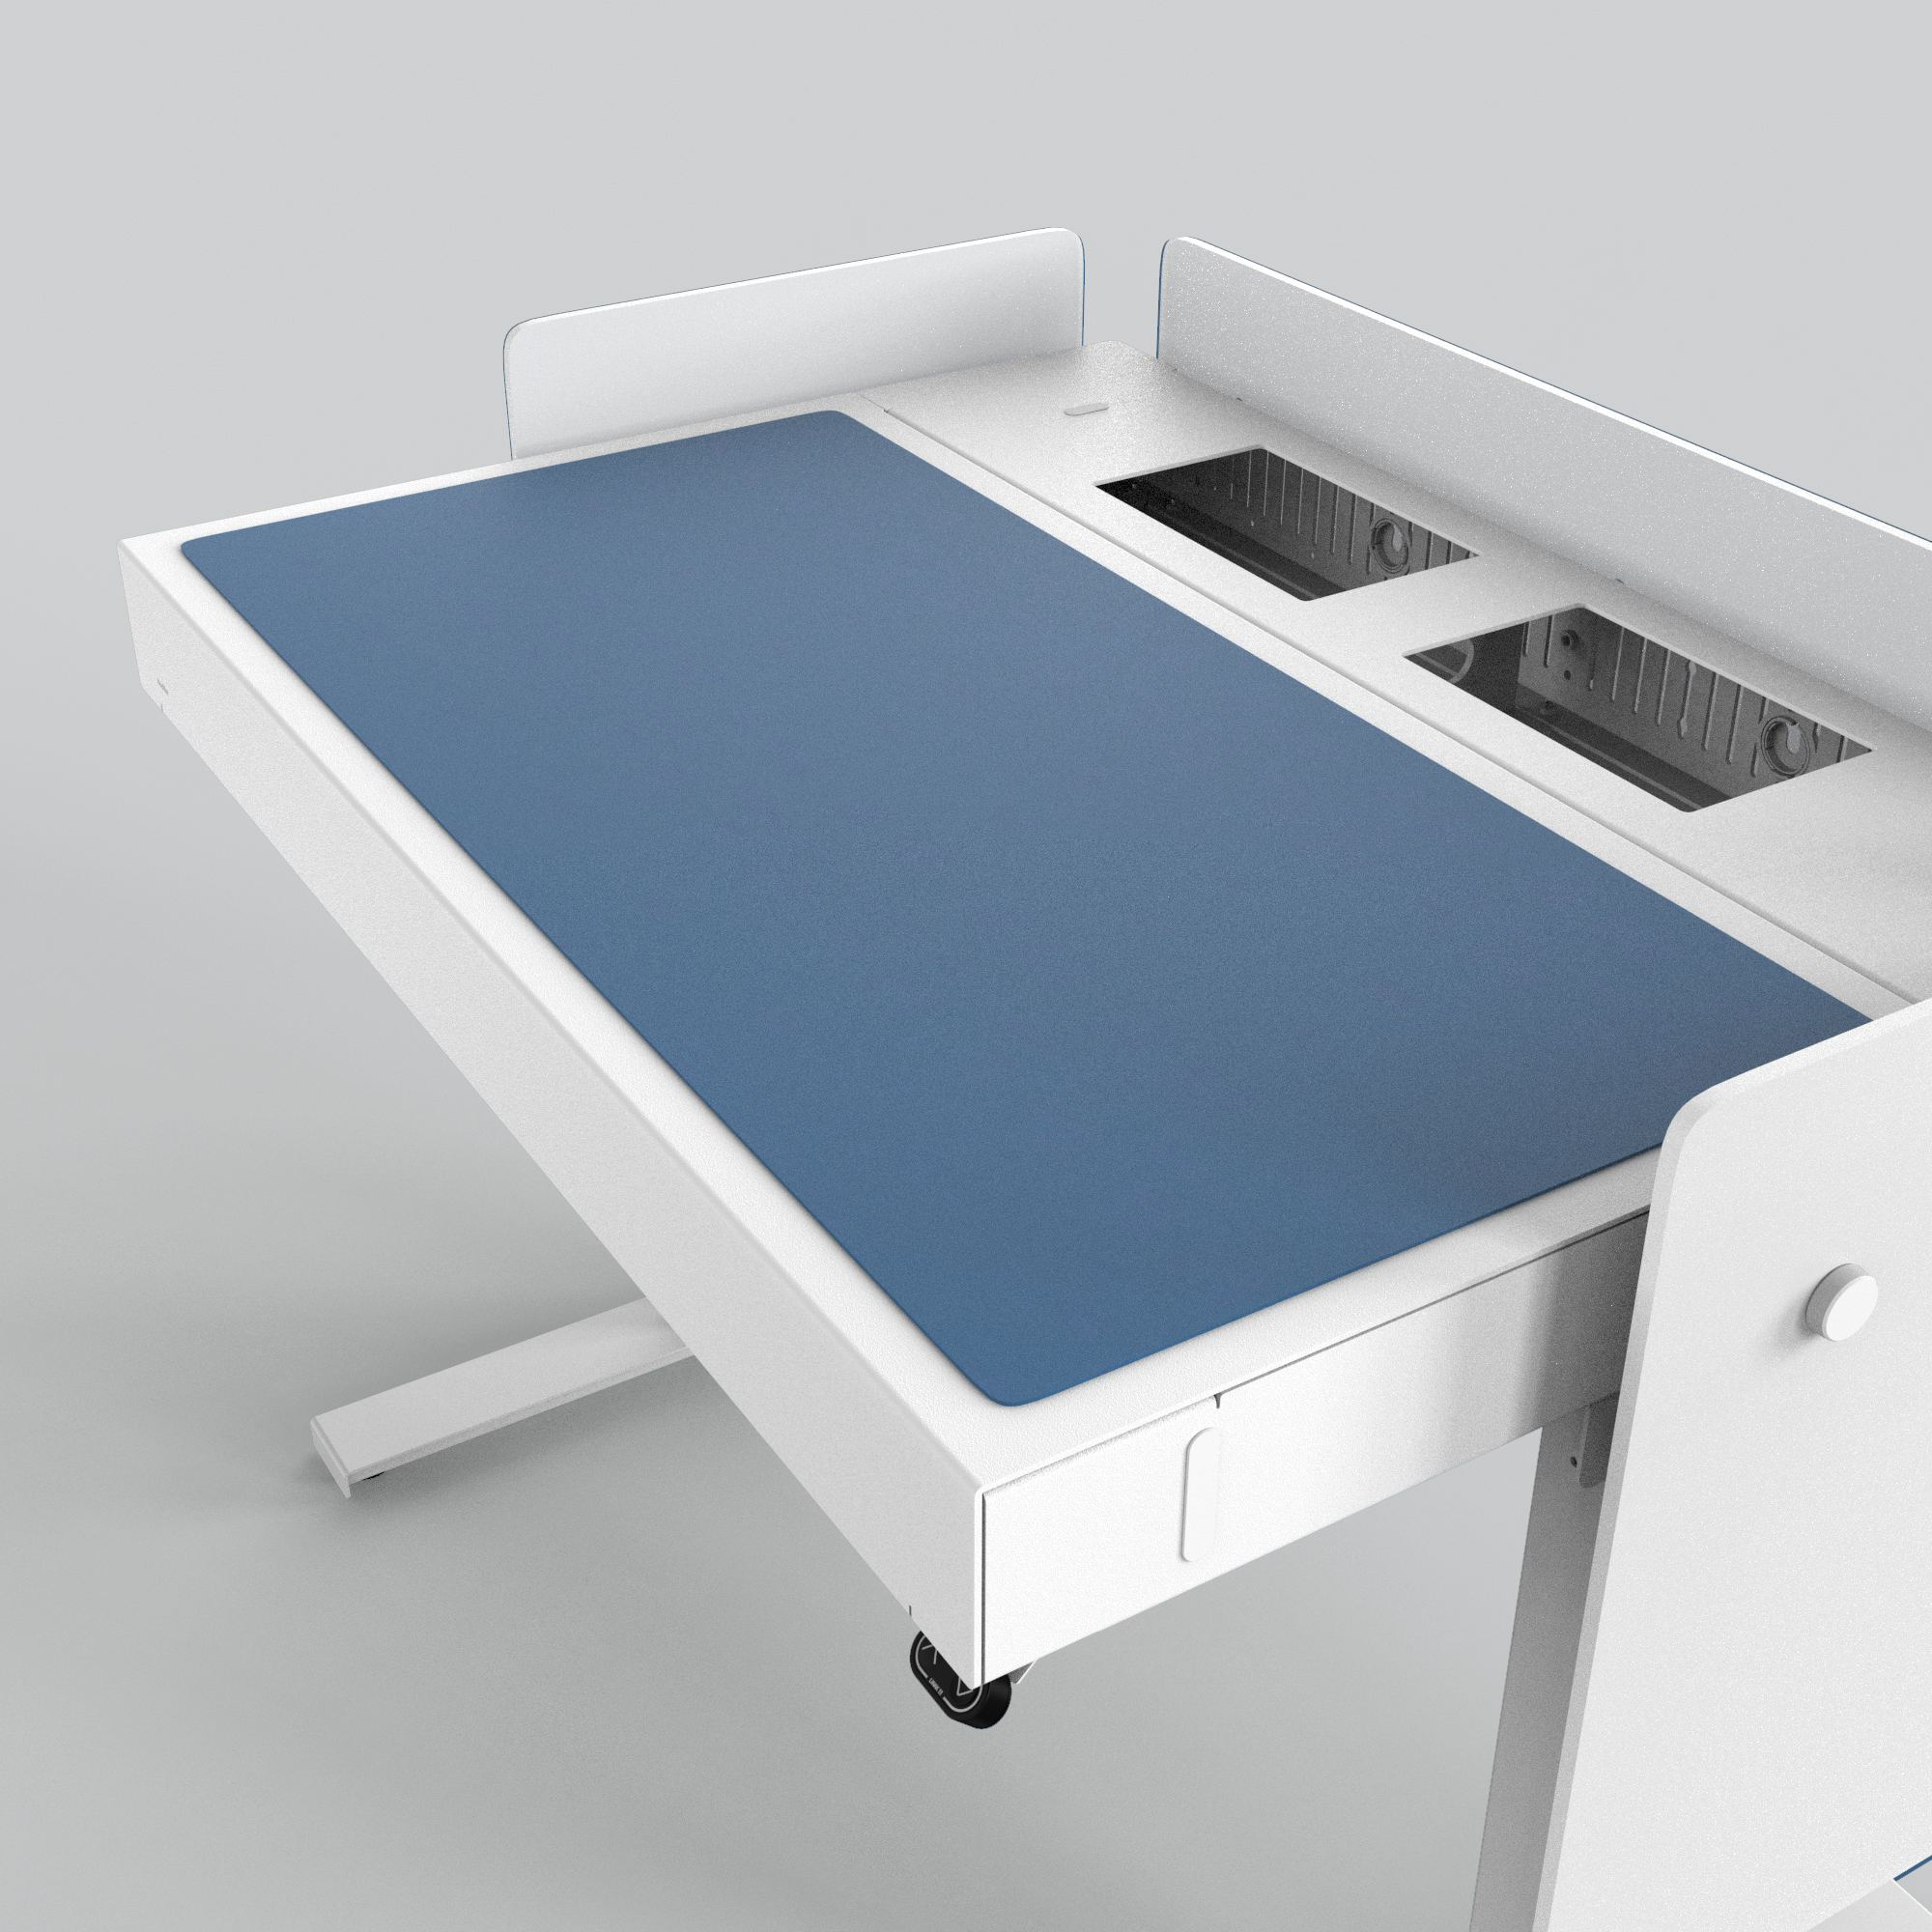 H922-4181 4U Deskpad - Midnight Blue